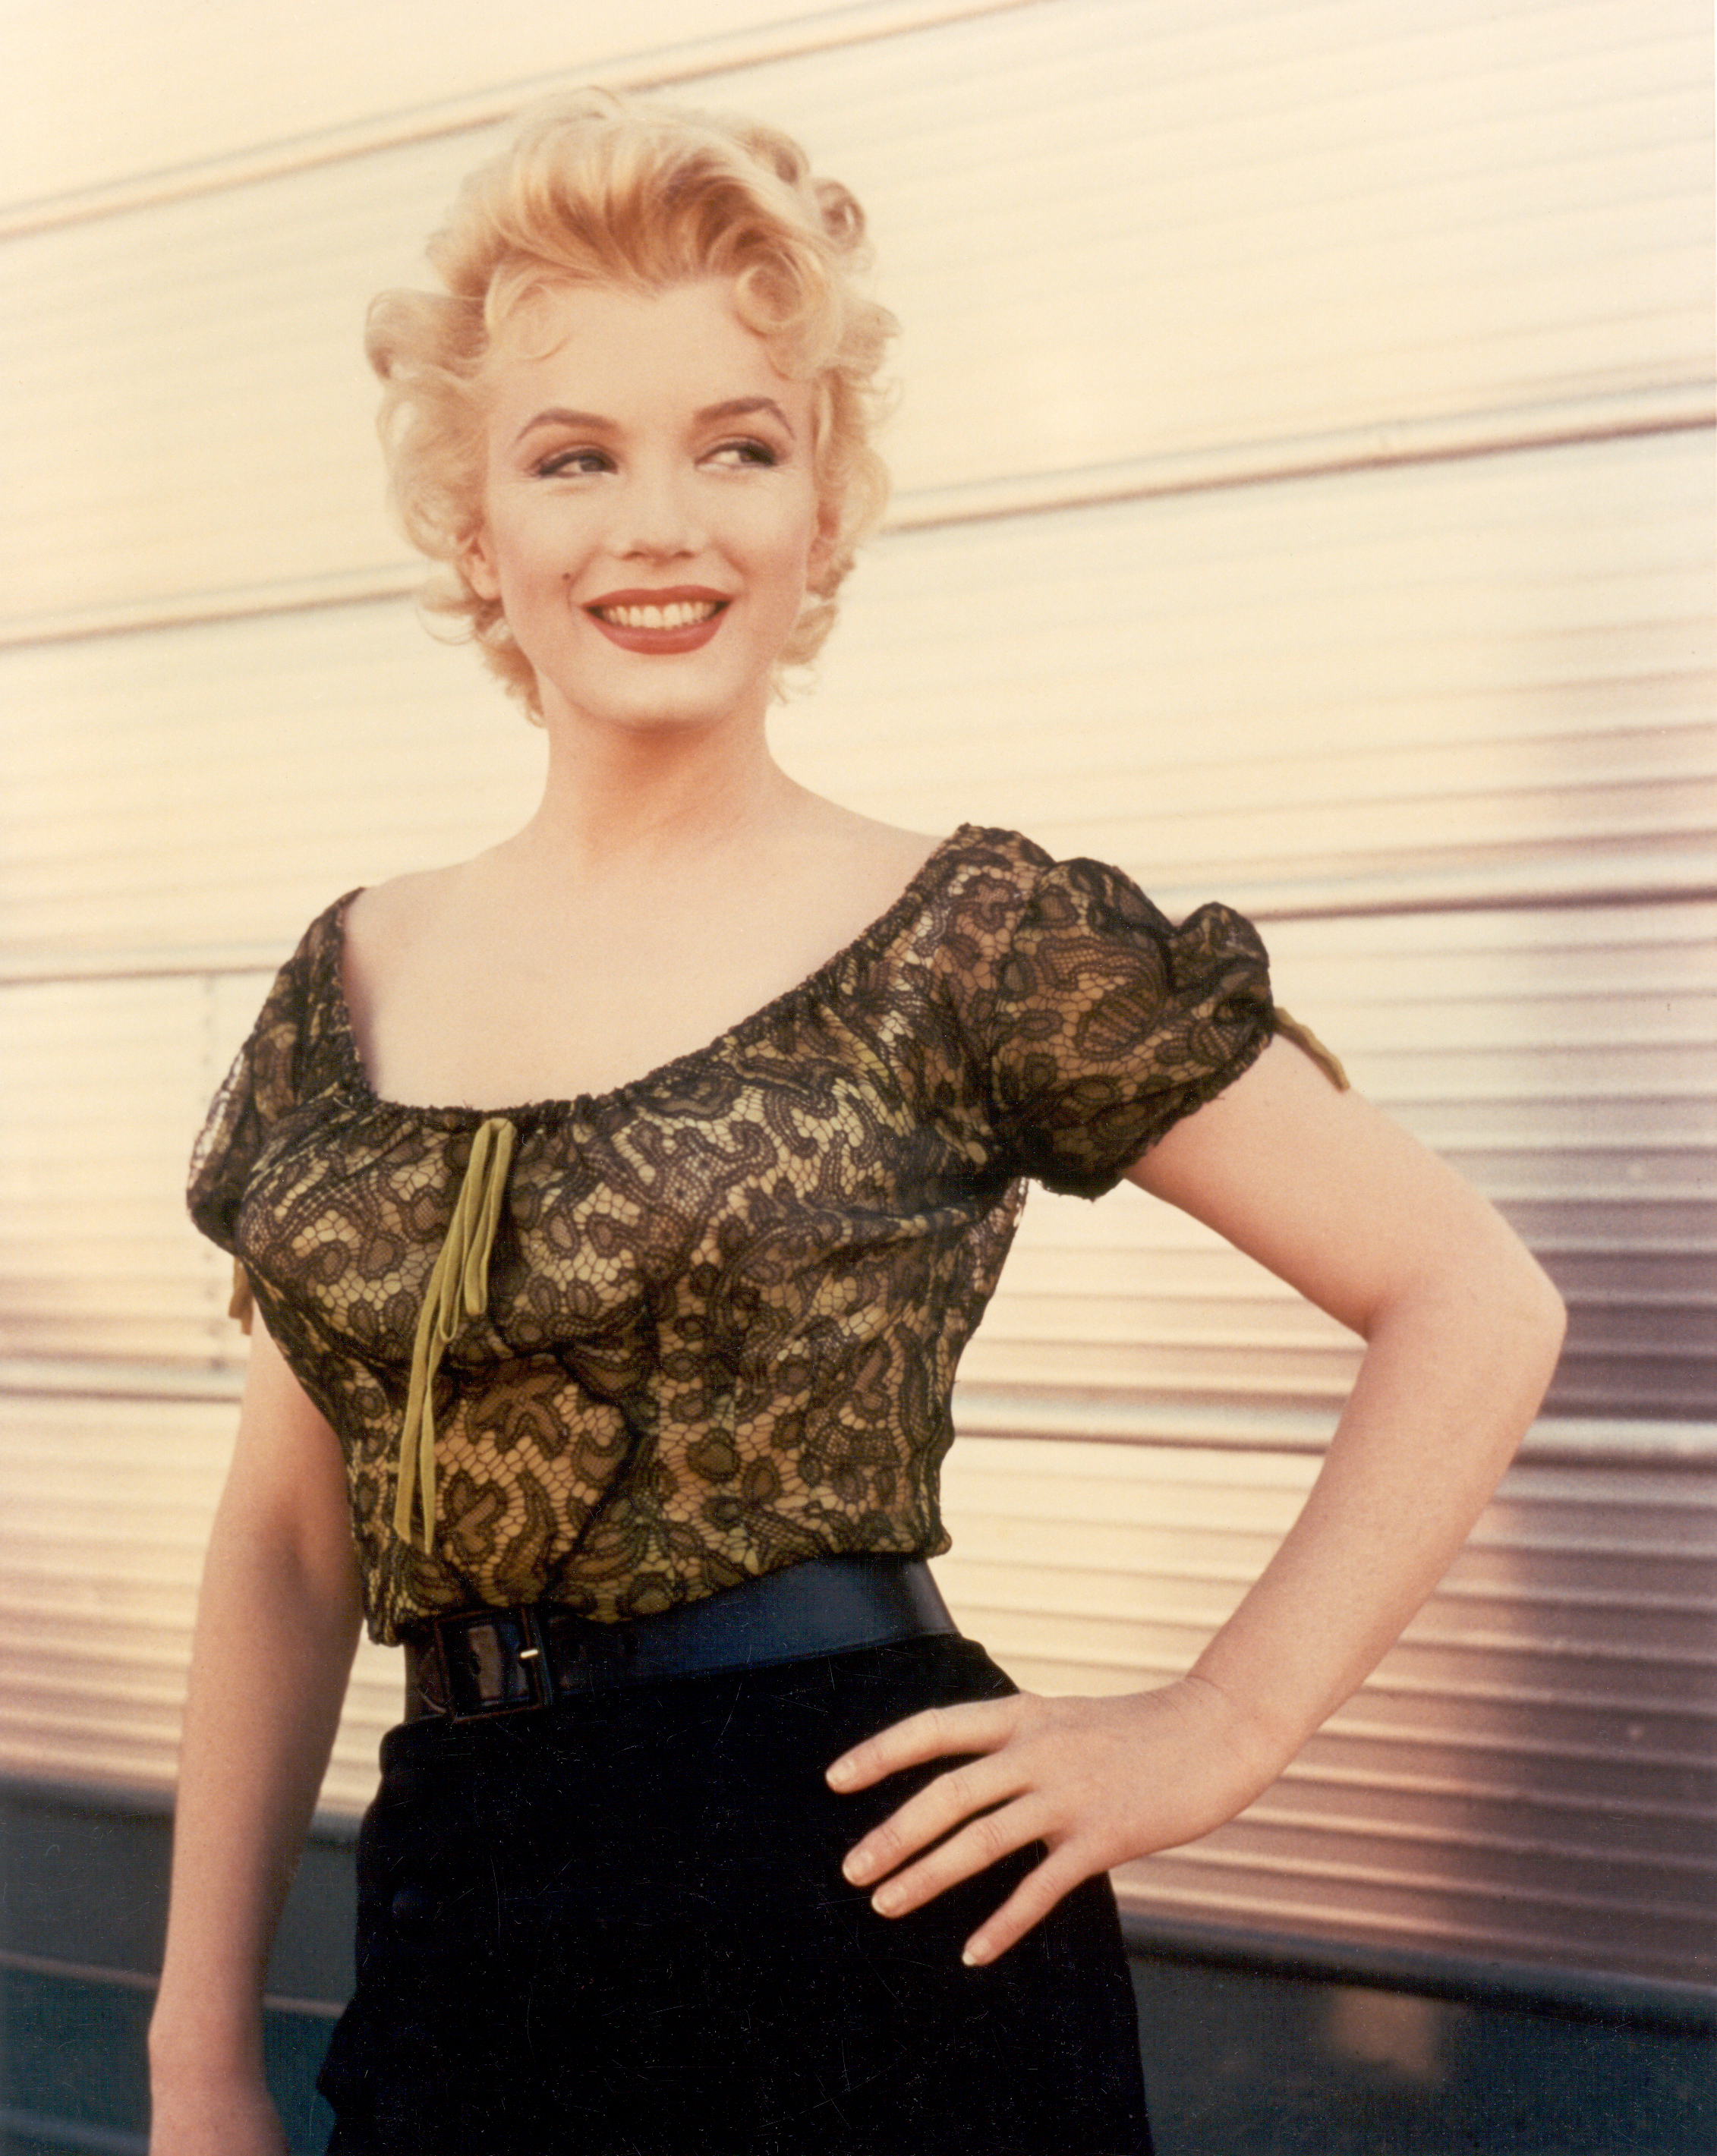 Marilyn Monroe dans une scène de "Arrêt d'autobus" en 1956 | Source : Getty Images